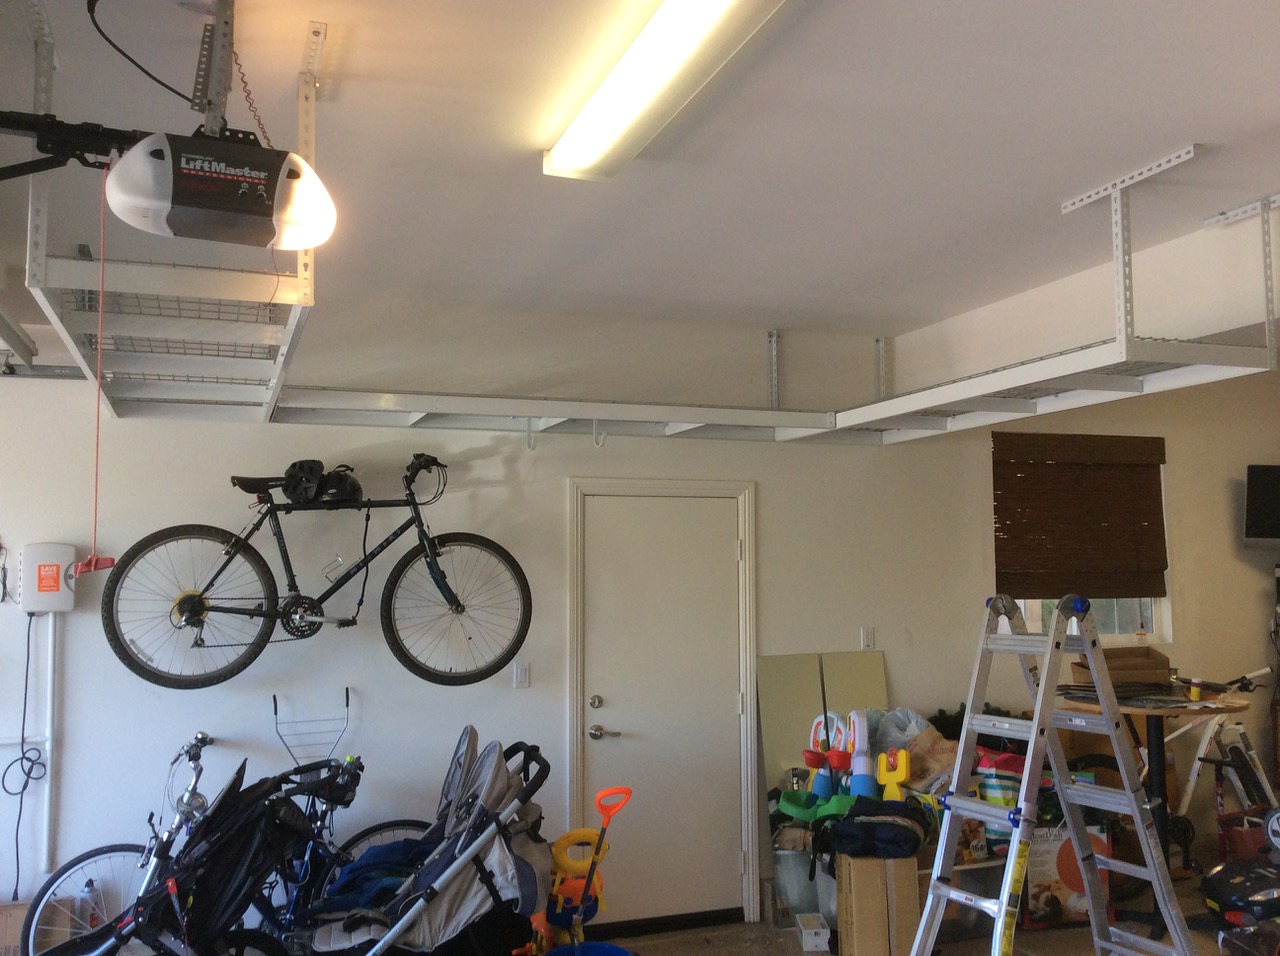 Overhead Garage Storage Ideas